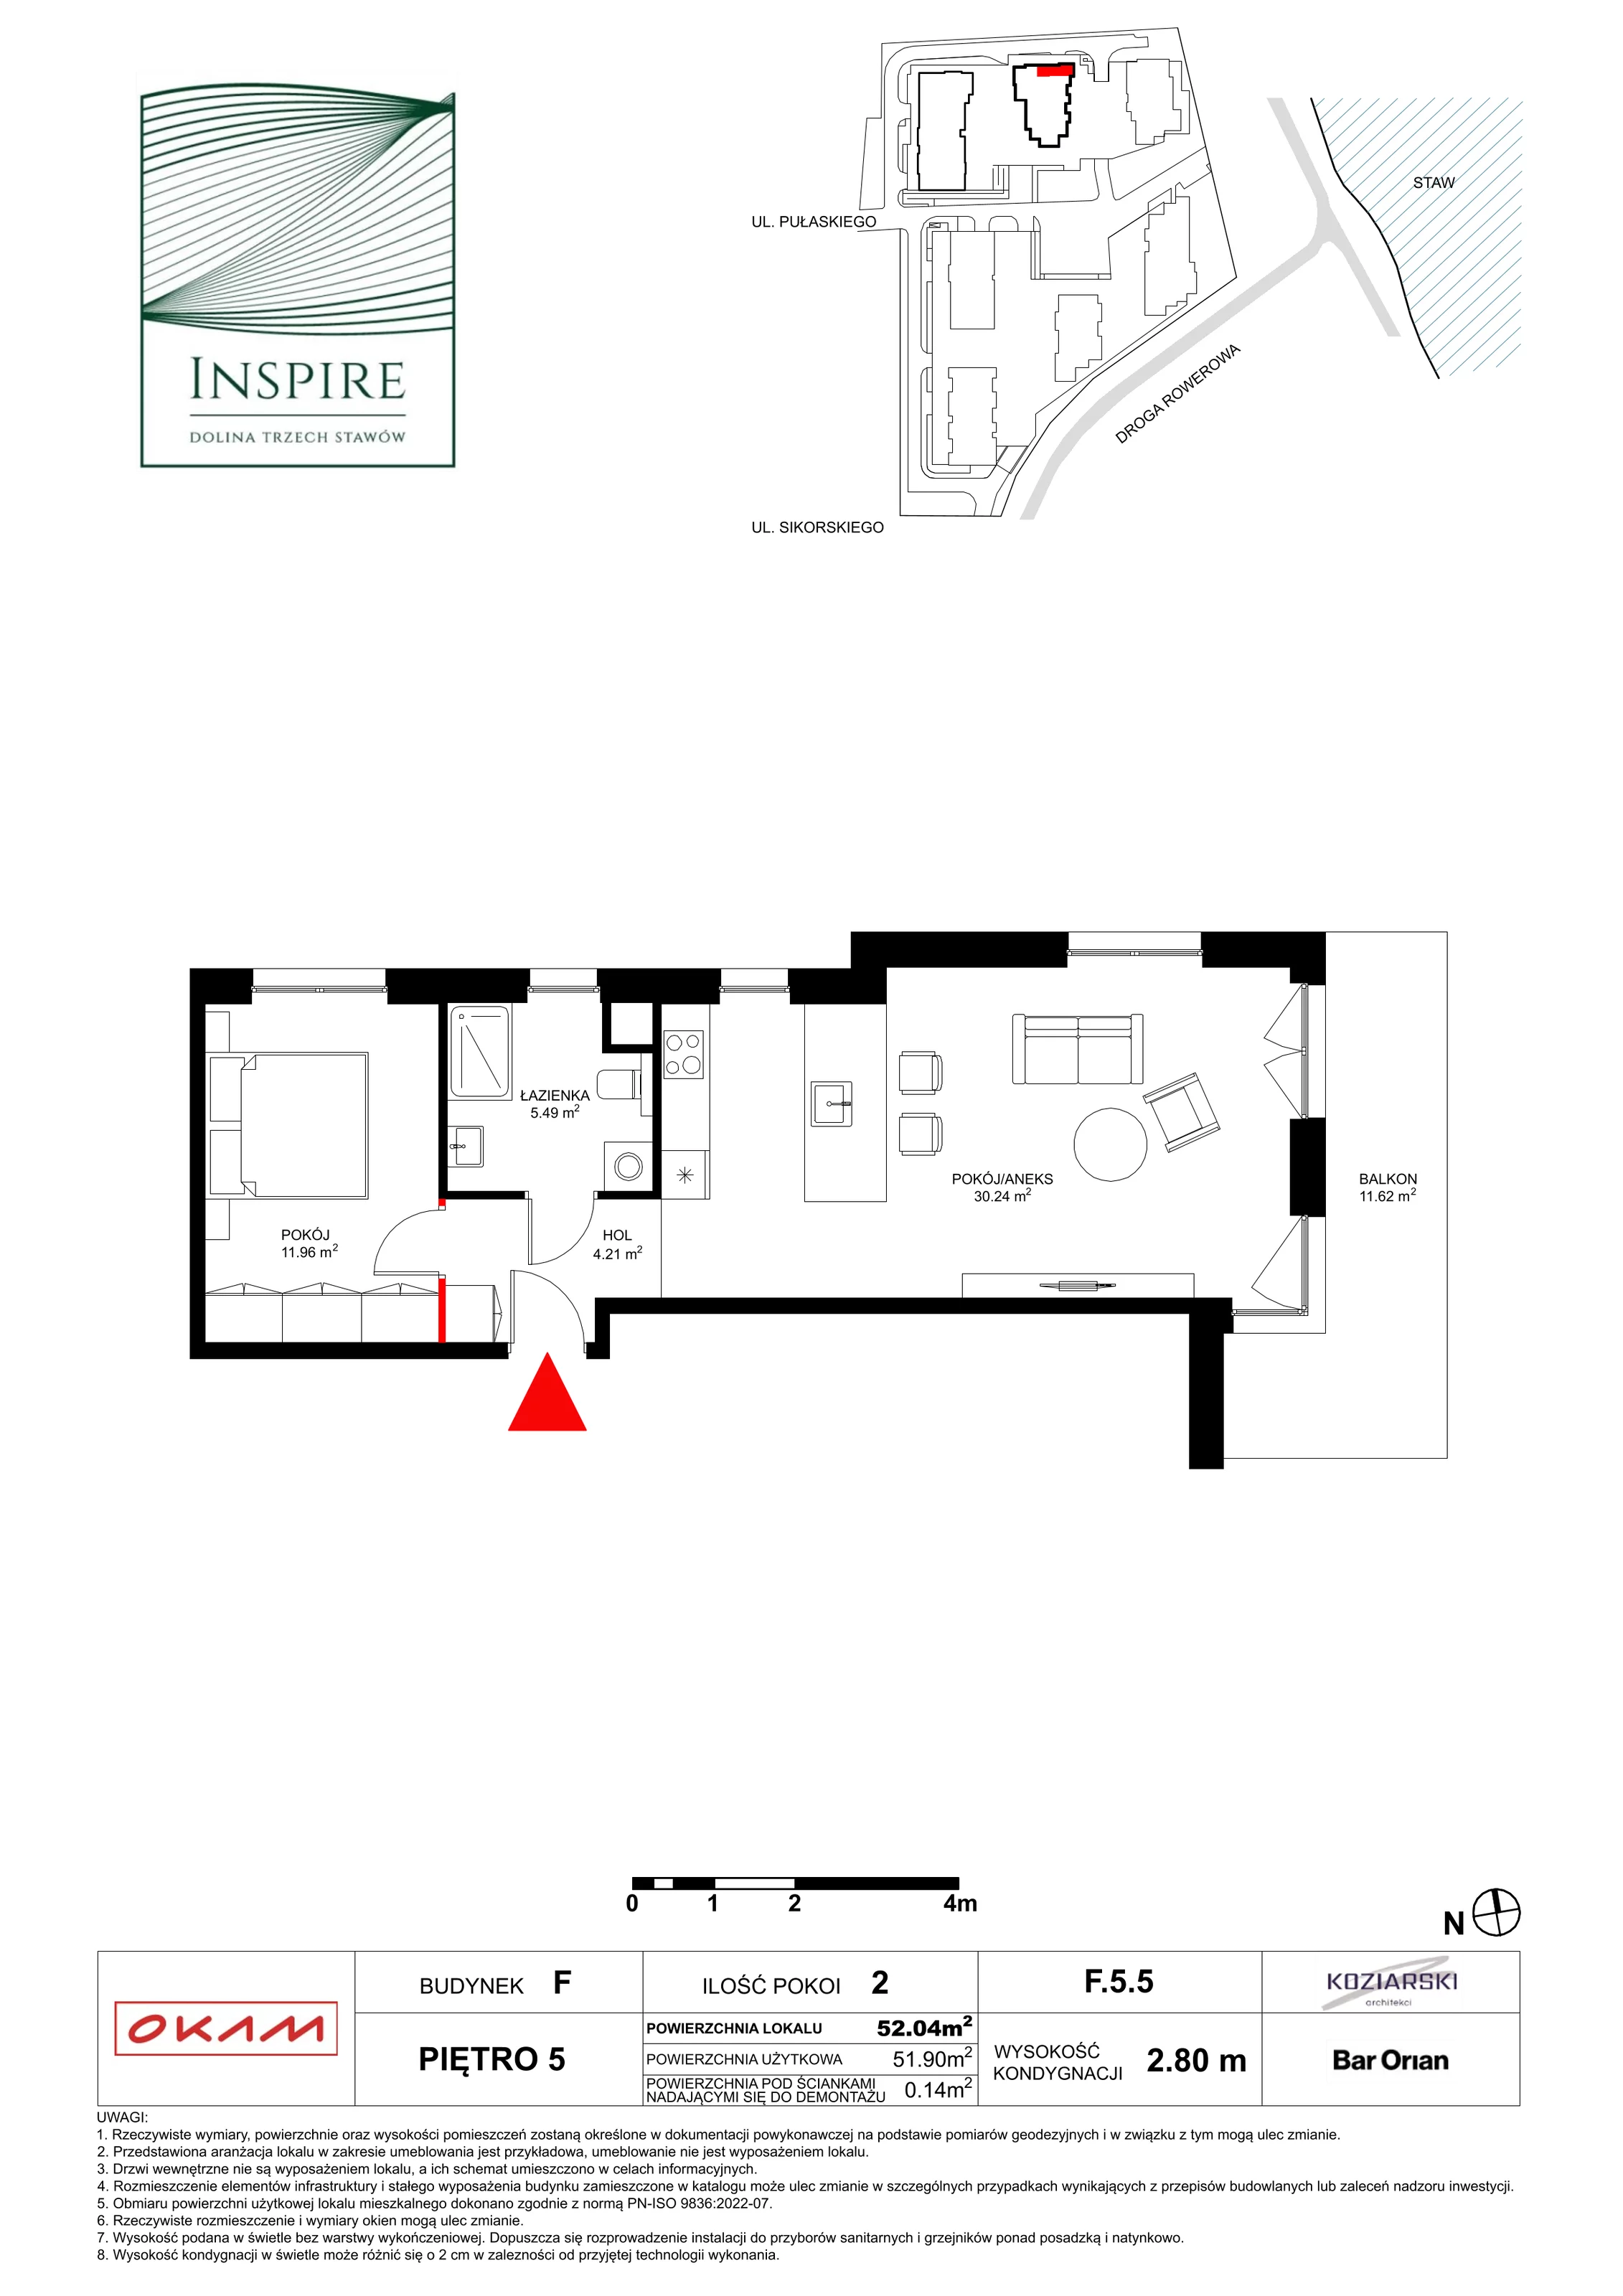 Apartament 51,40 m², piętro 5, oferta nr F.5.5, Inspire, Katowice, Osiedle Paderewskiego-Muchowiec, Dolina Trzech Stawów, ul. gen. Sikorskiego 41